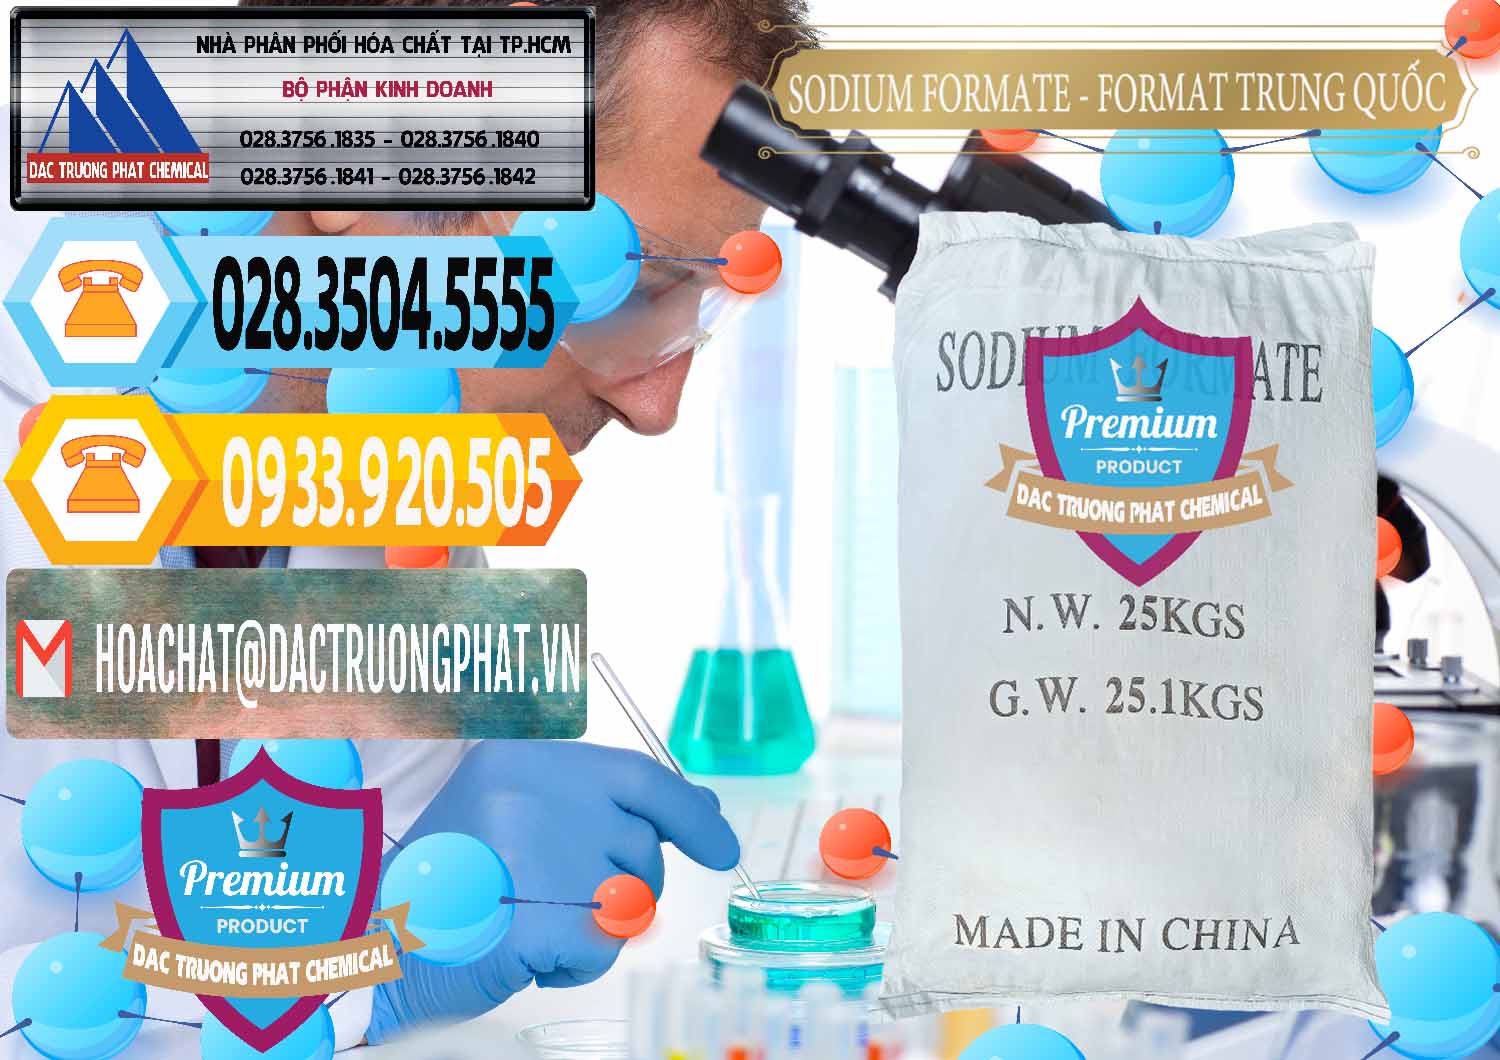 Công ty chuyên kinh doanh _ bán Sodium Formate - Natri Format Trung Quốc China - 0142 - Cty chuyên kinh doanh ( phân phối ) hóa chất tại TP.HCM - hoachattayrua.net